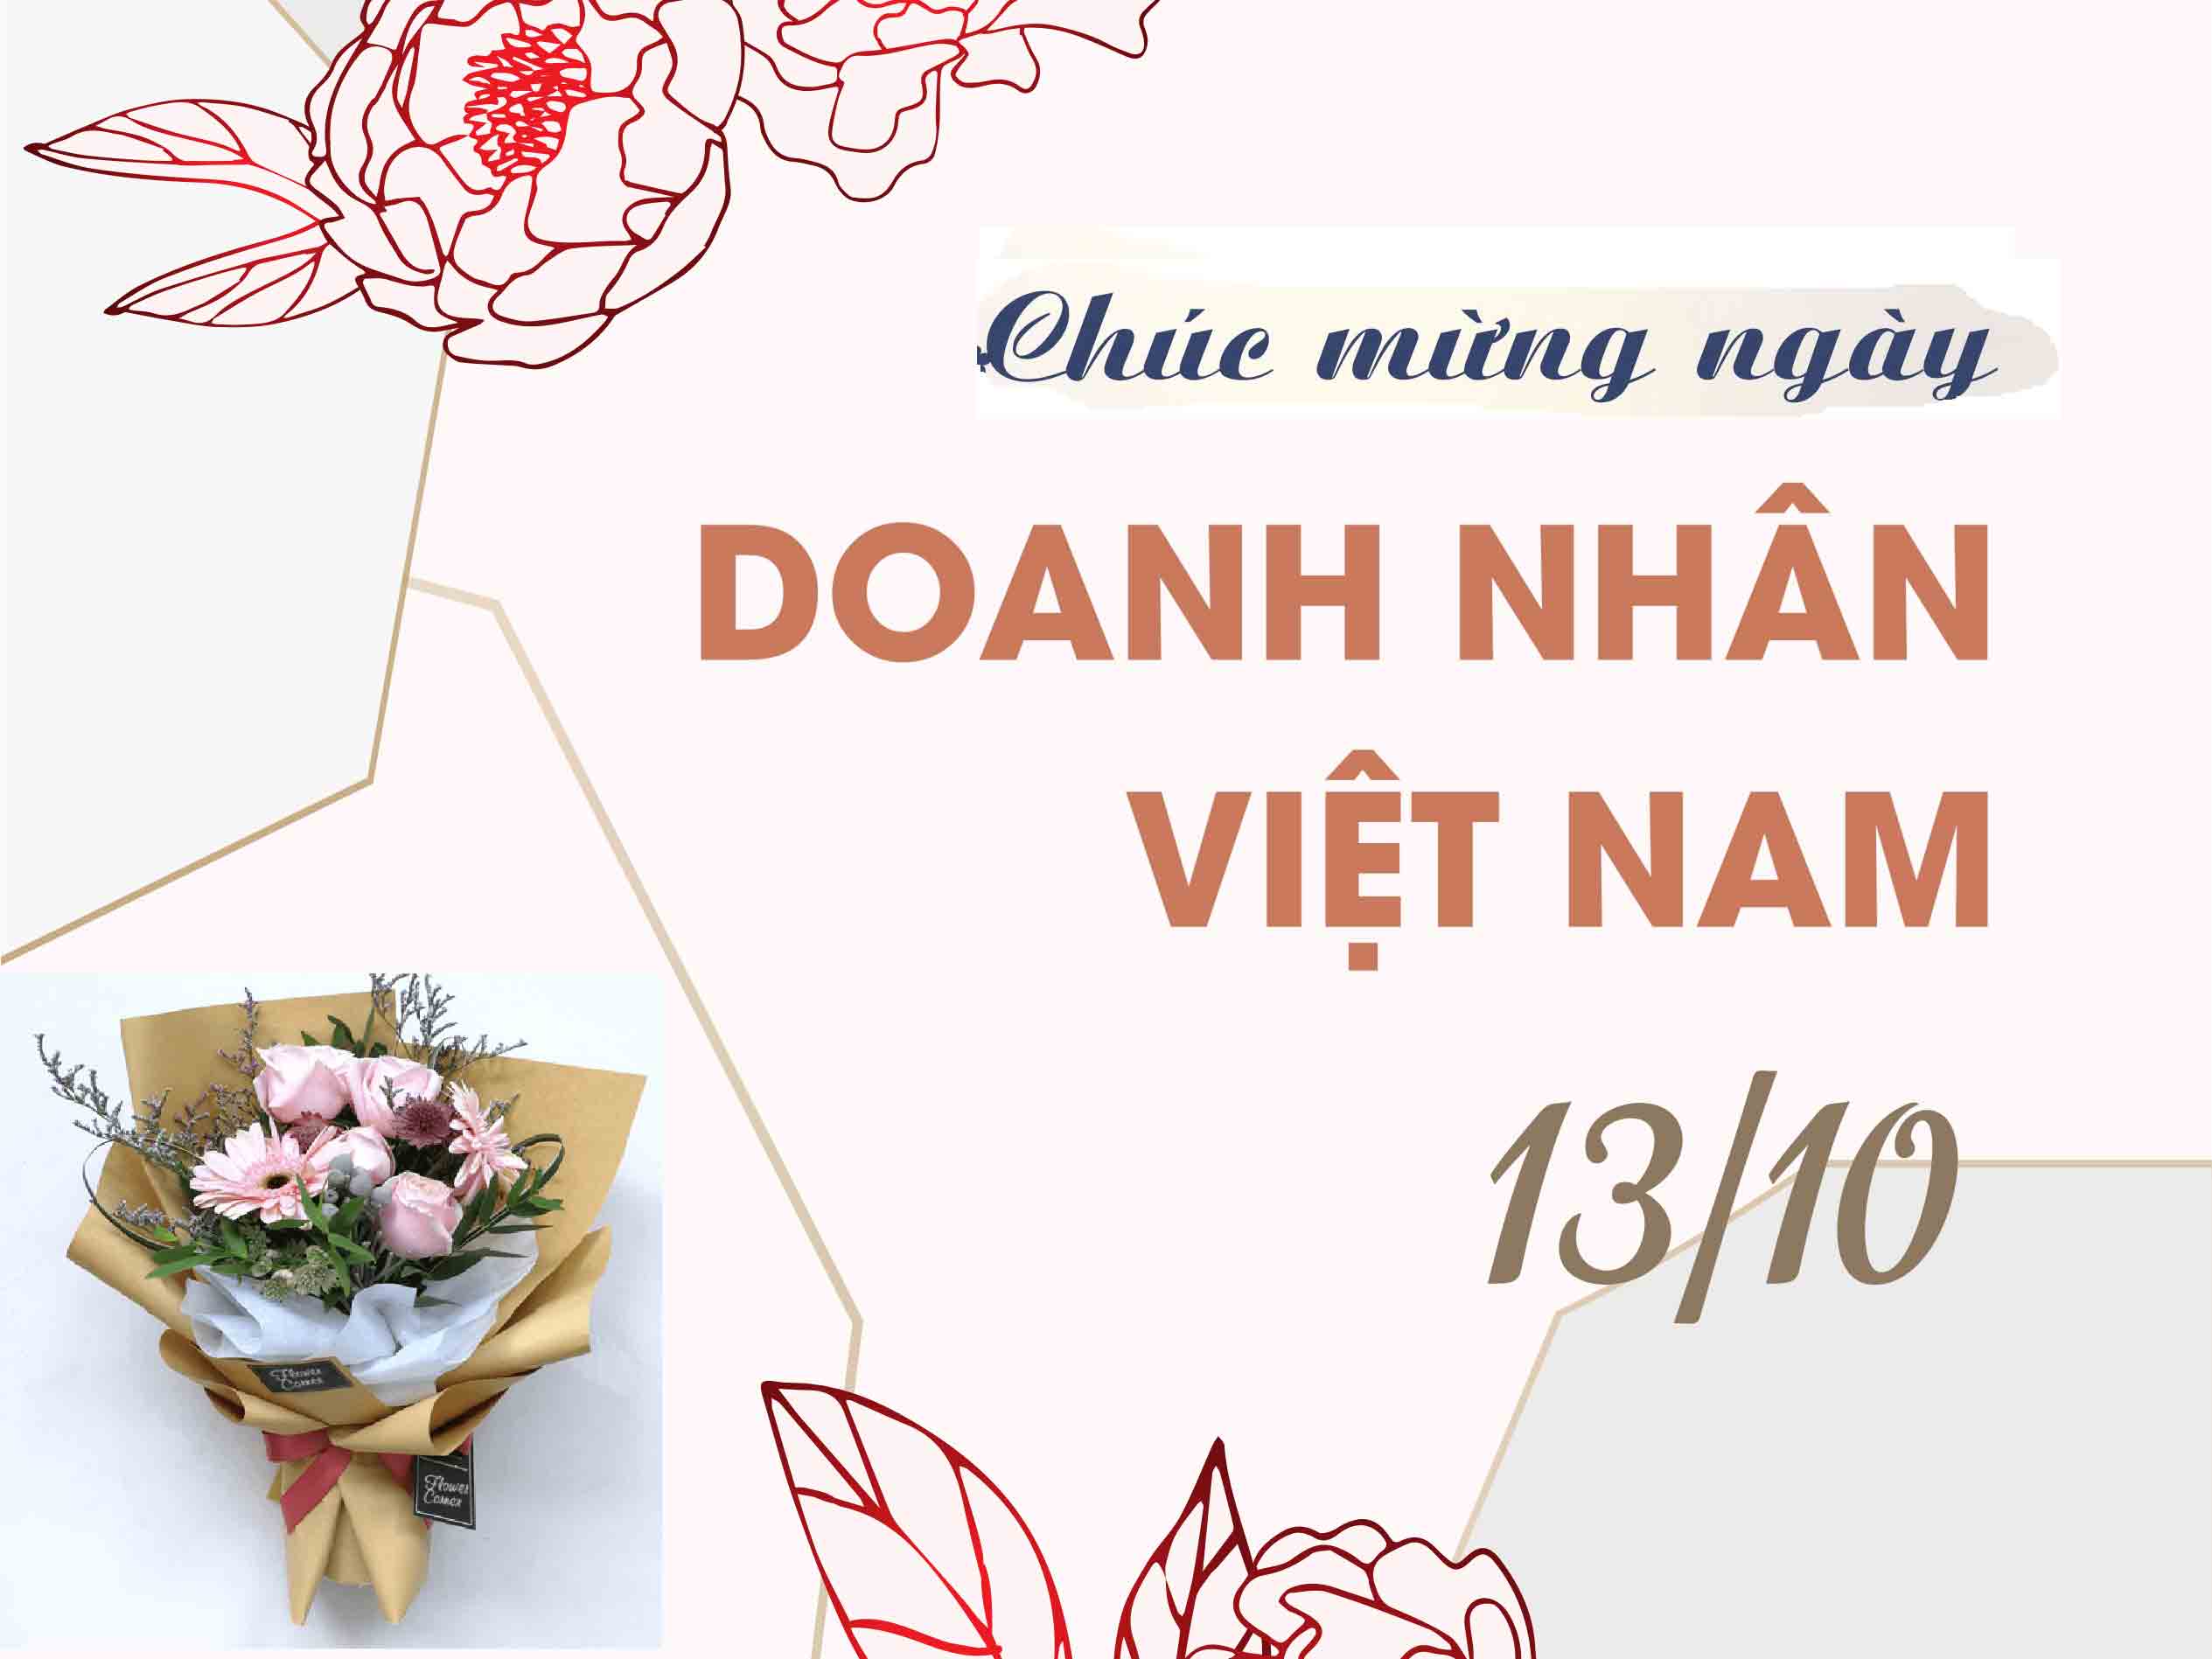 Hình ảnh chúc mừng ngày doanh nhân Việt Nam: Nhân Ngày doanh nhân Việt Nam trong năm 2024, cộng đồng mạng sẽ cùng nhau truyền tay nhau những hình ảnh chúc mừng, động viên những người làm kinh doanh với tinh thần quyết tâm và sáng tạo. Đây là dịp để tôn vinh những nỗ lực của những người doanh nhân, đồng thời khơi gợi niềm tin về tương lai của xã hội.